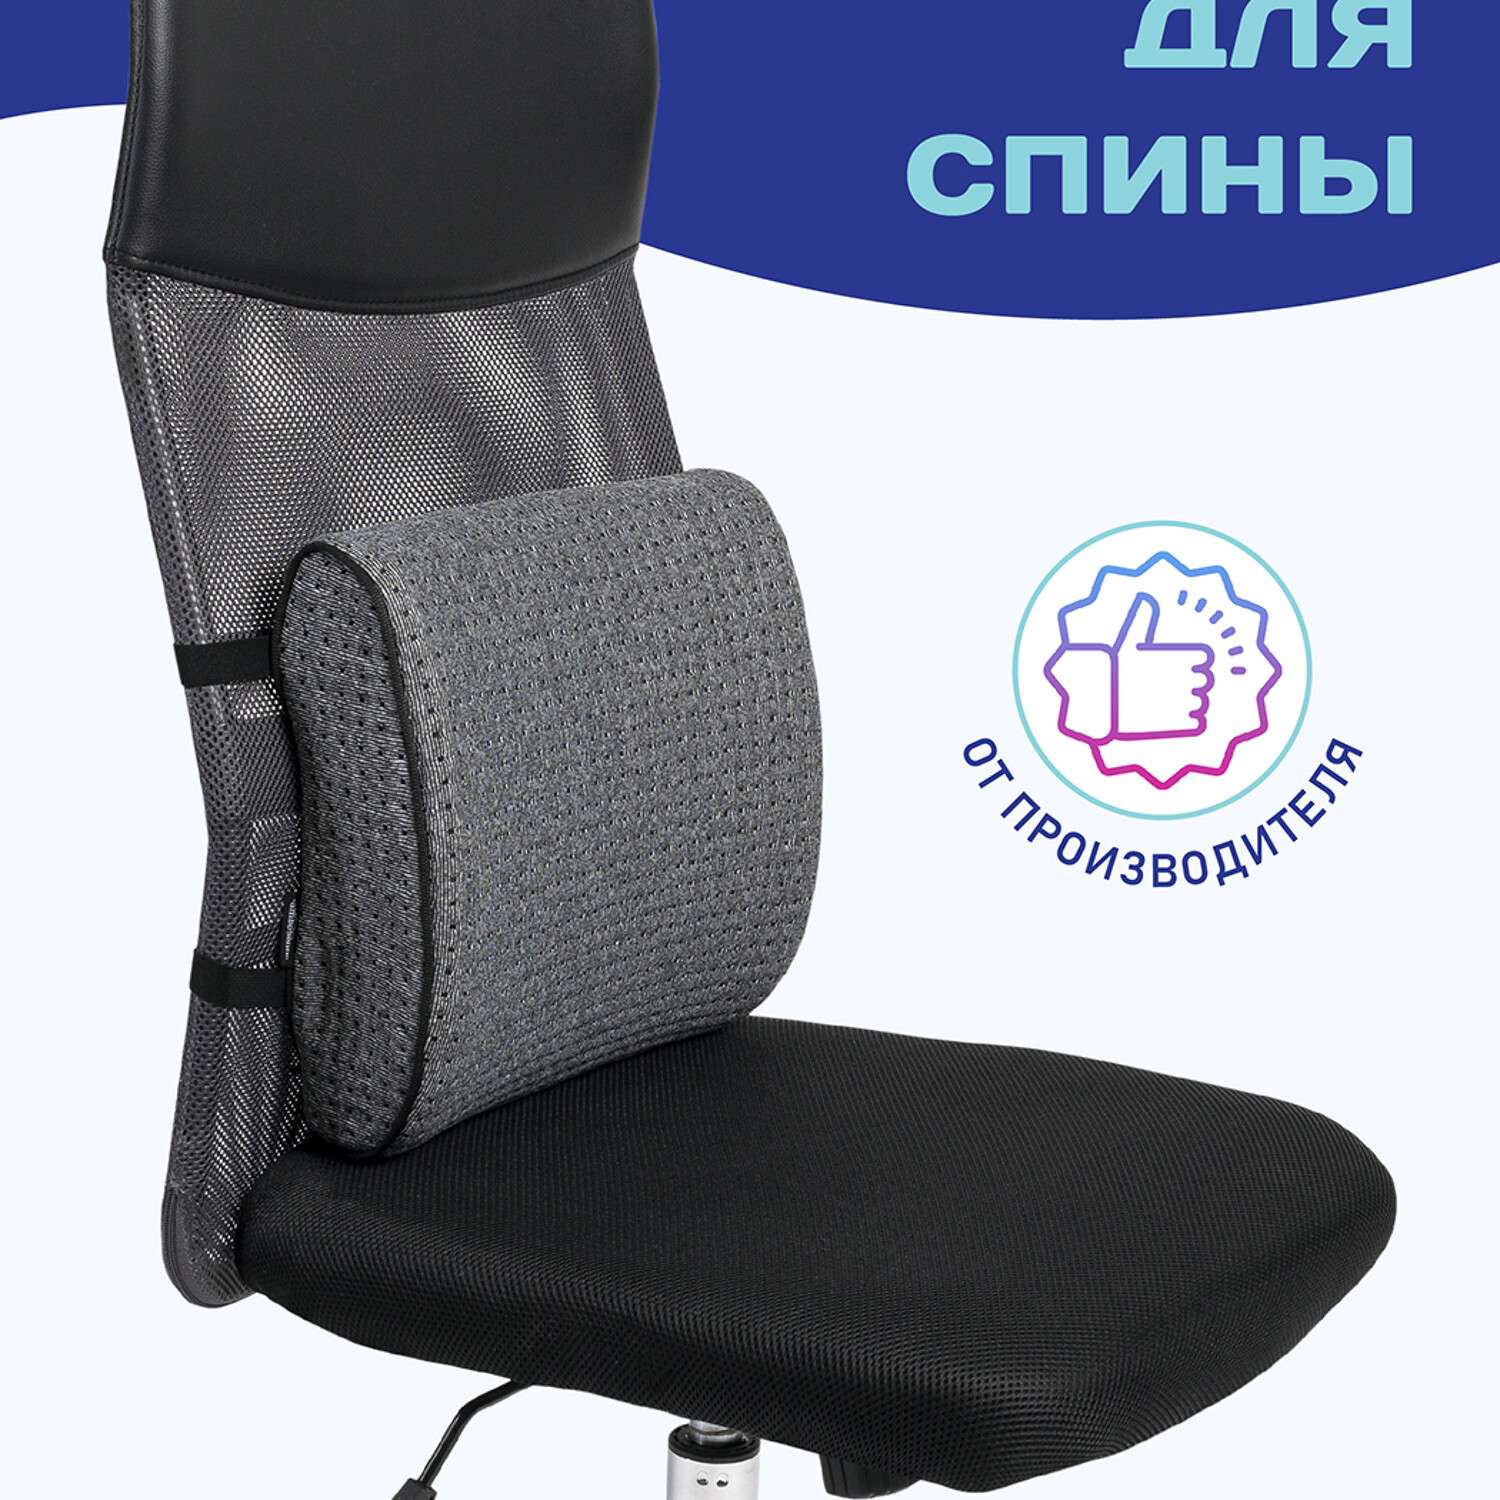 Ортопедическая подушка Ambesonne на стул под поясницу для спины на офисное кресло и в автомобиль - фото 2